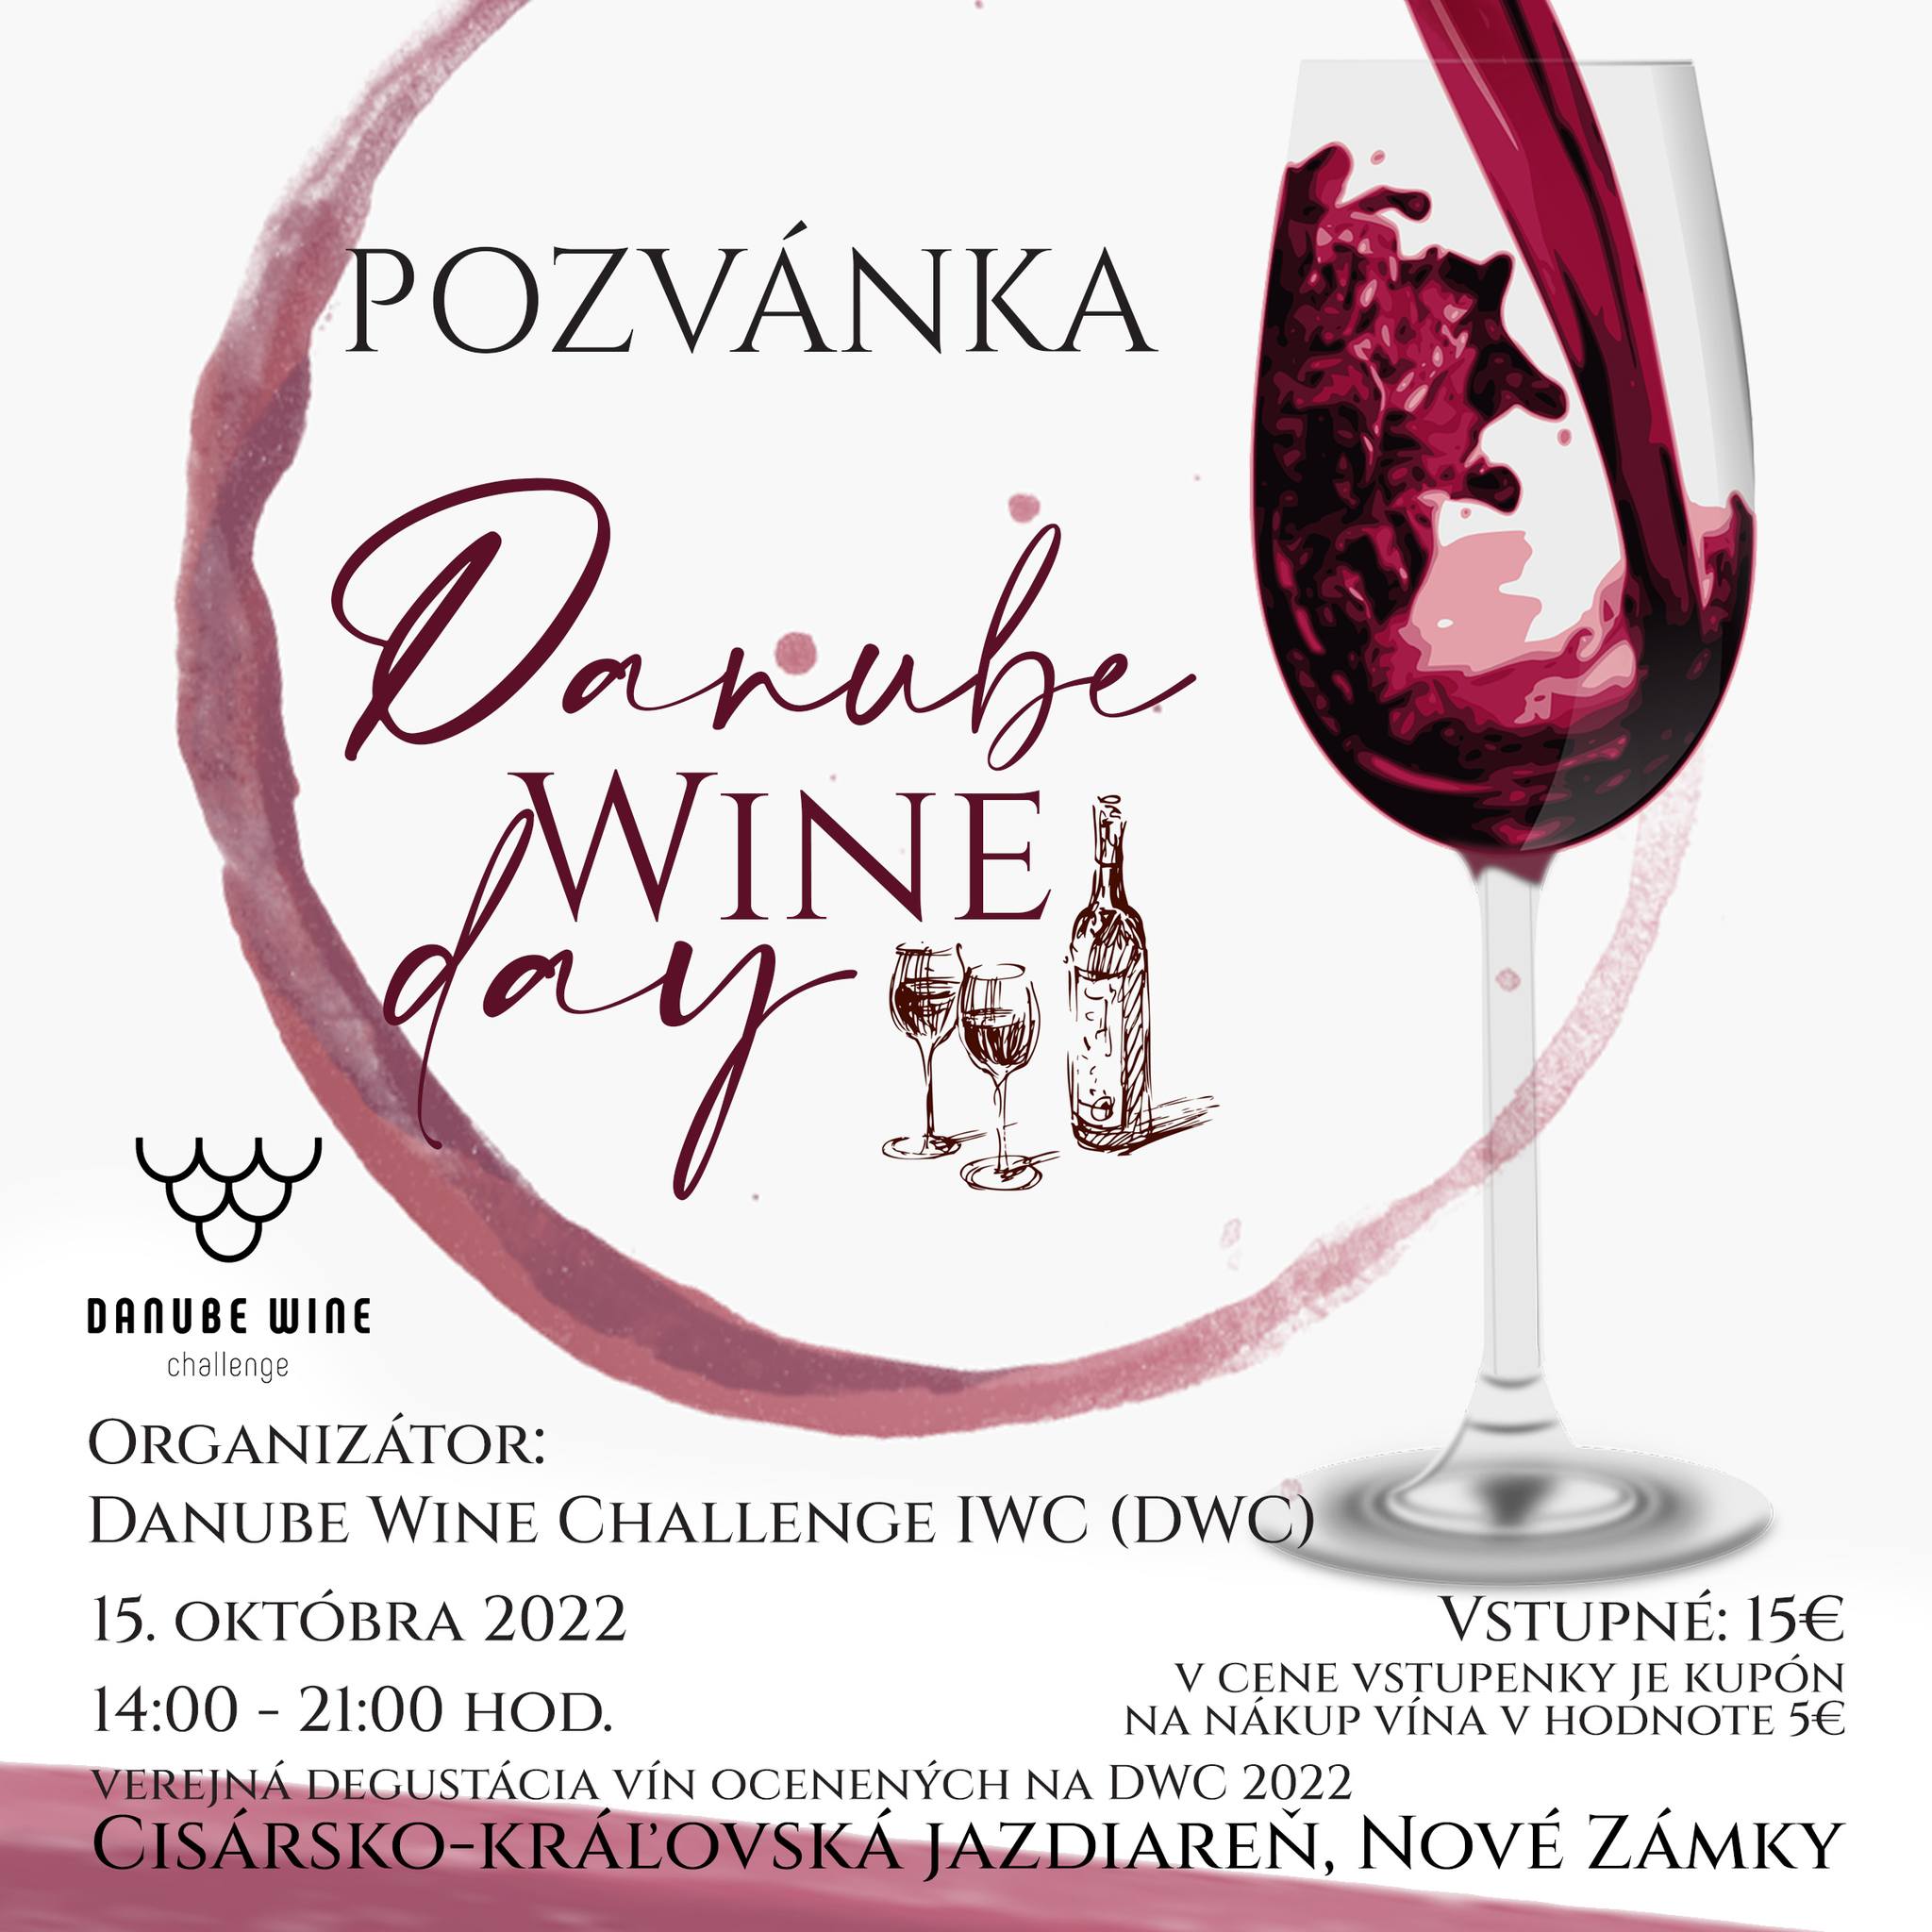 Danube Wine Day 2022 Nov Zmky